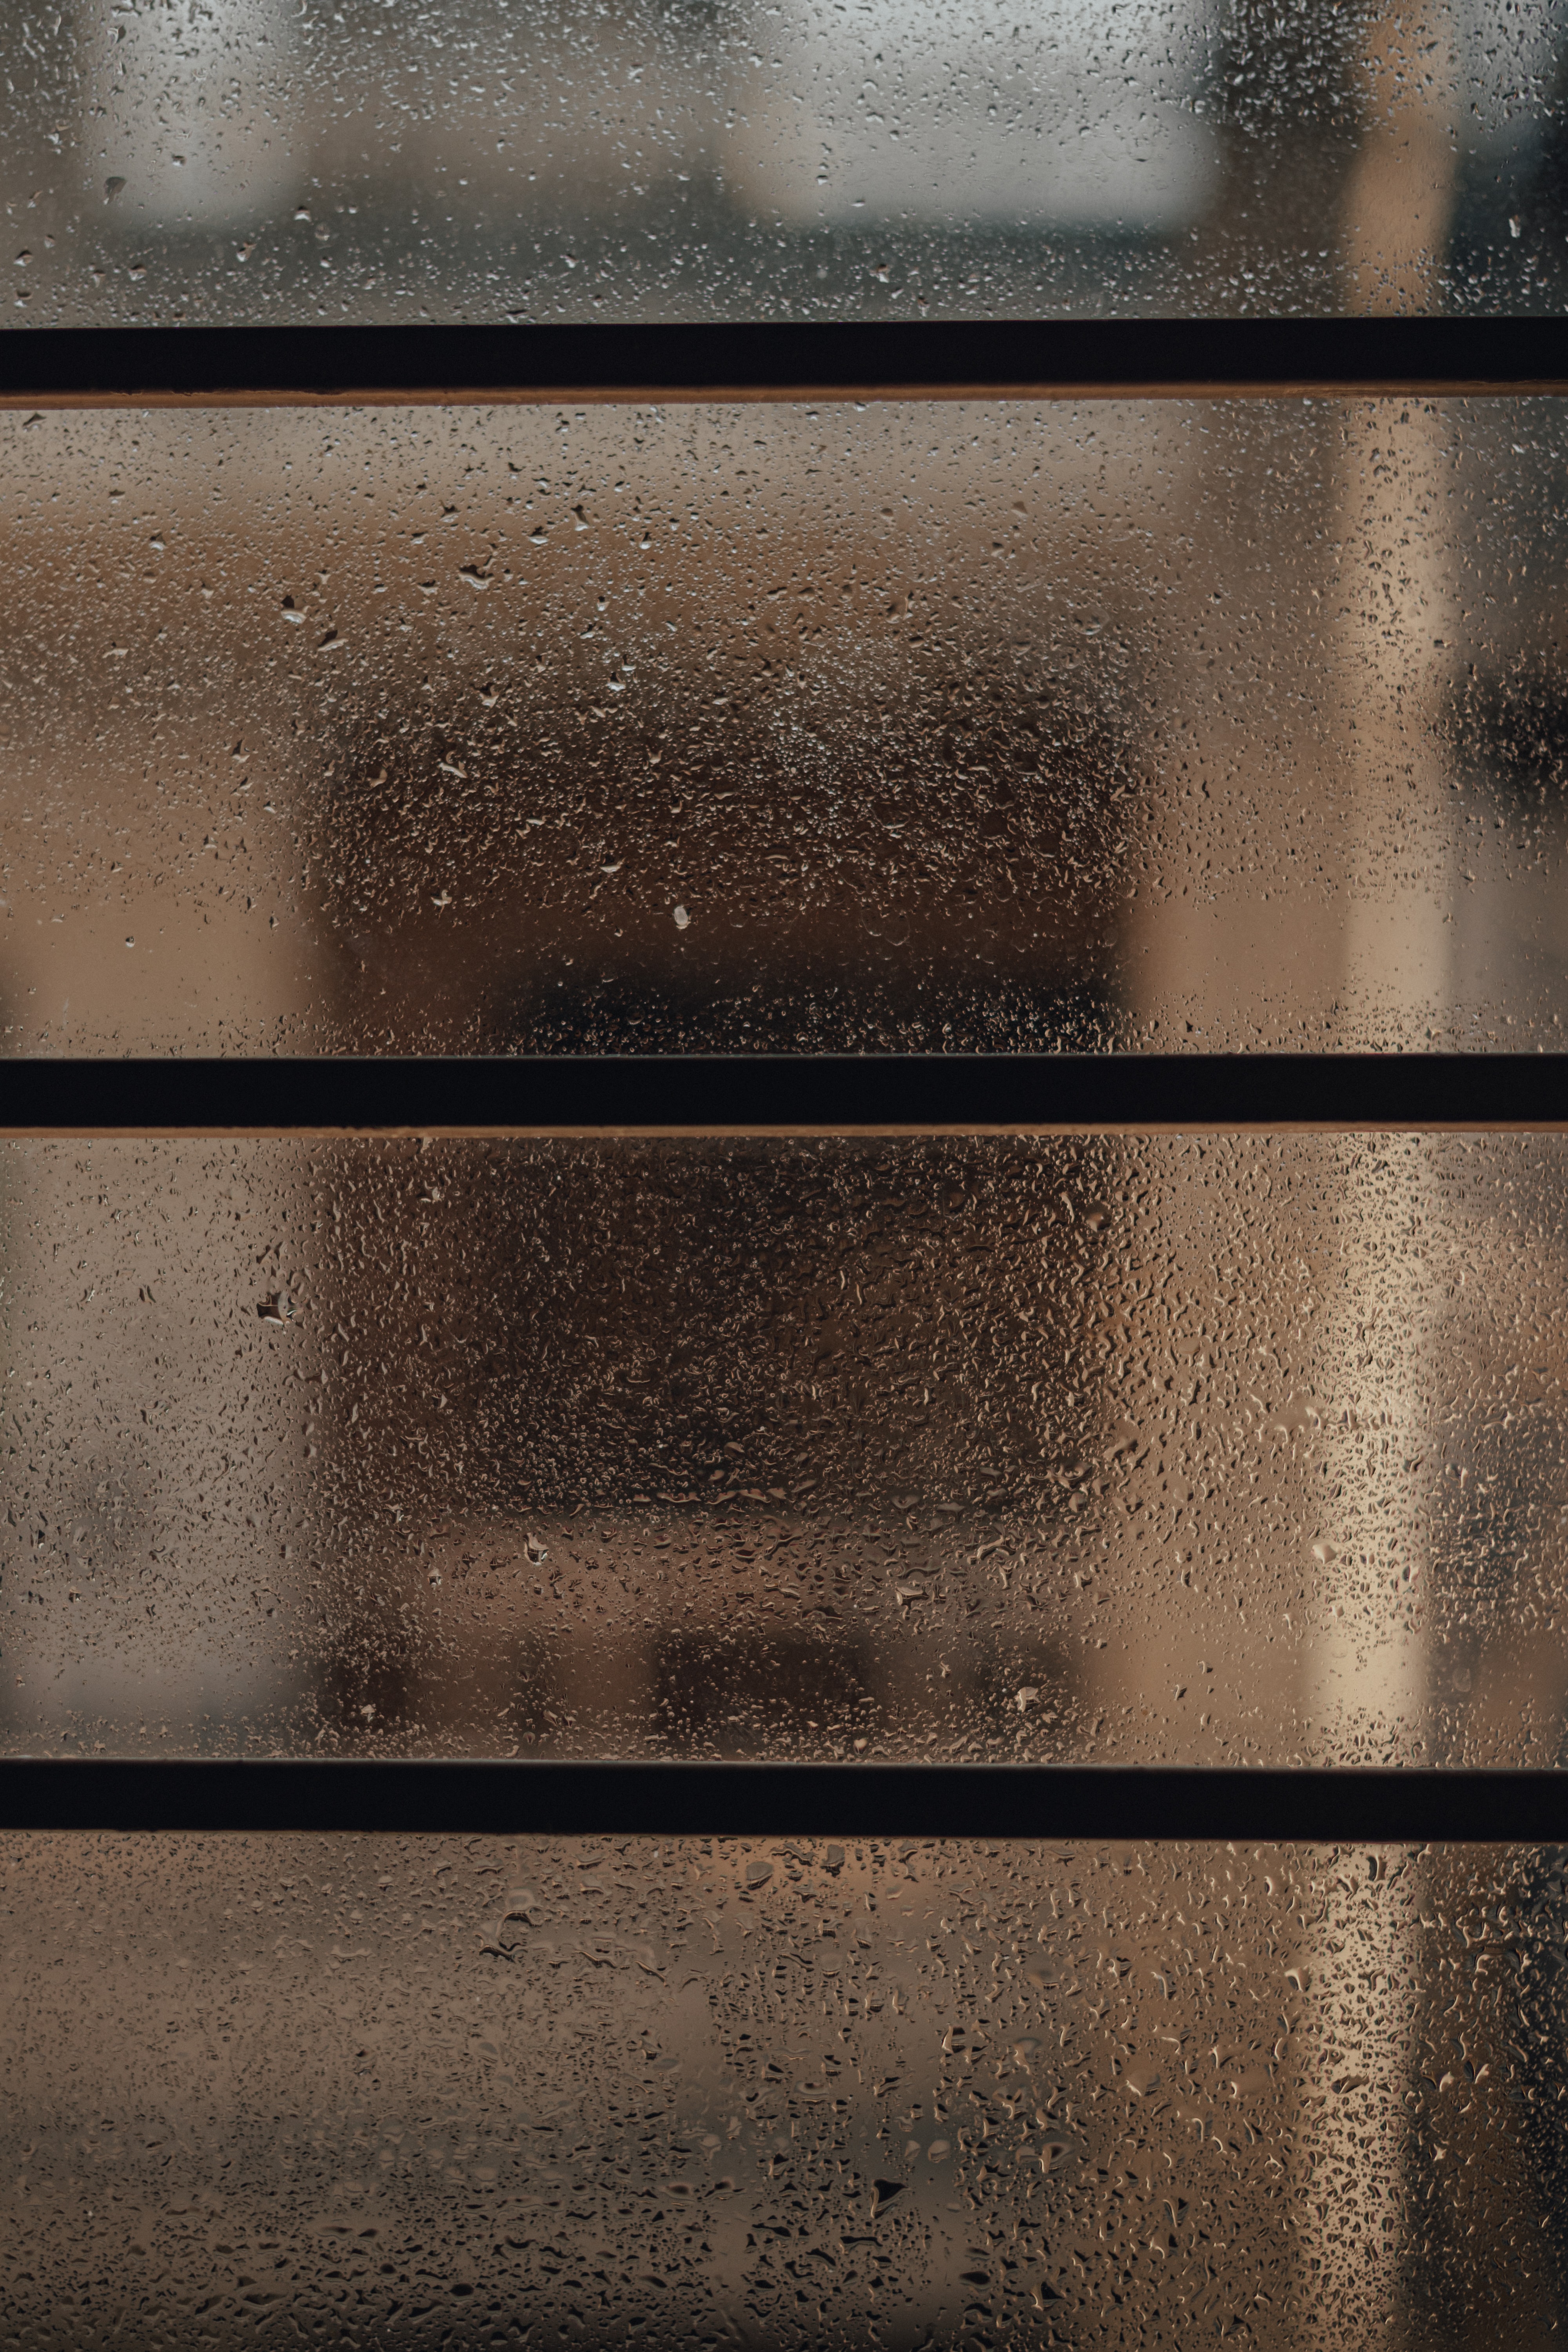 moisture, rain, drops, miscellanea, miscellaneous, glass, window UHD